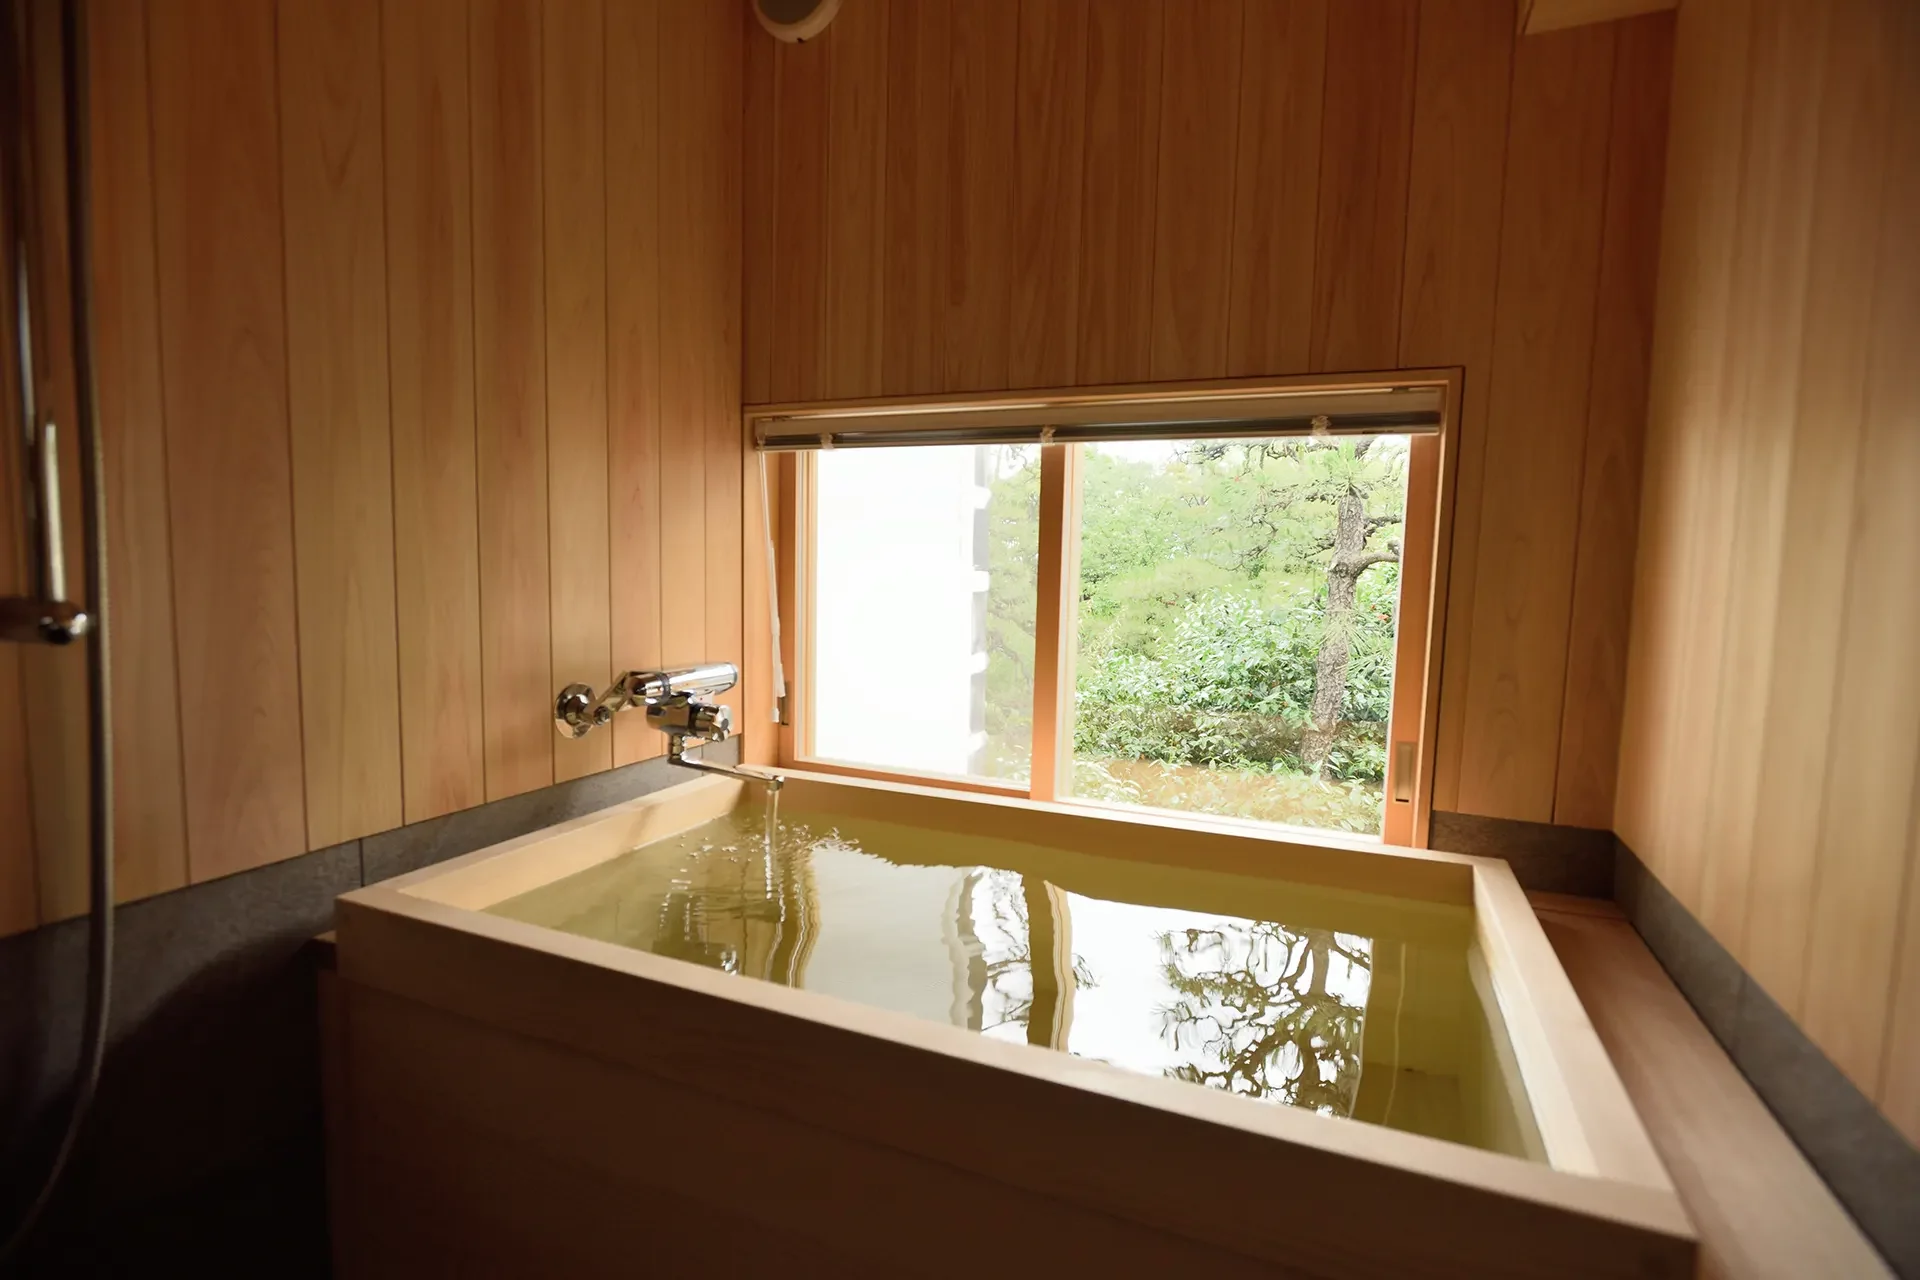 Schlichte Badewanne aus hellem Holz